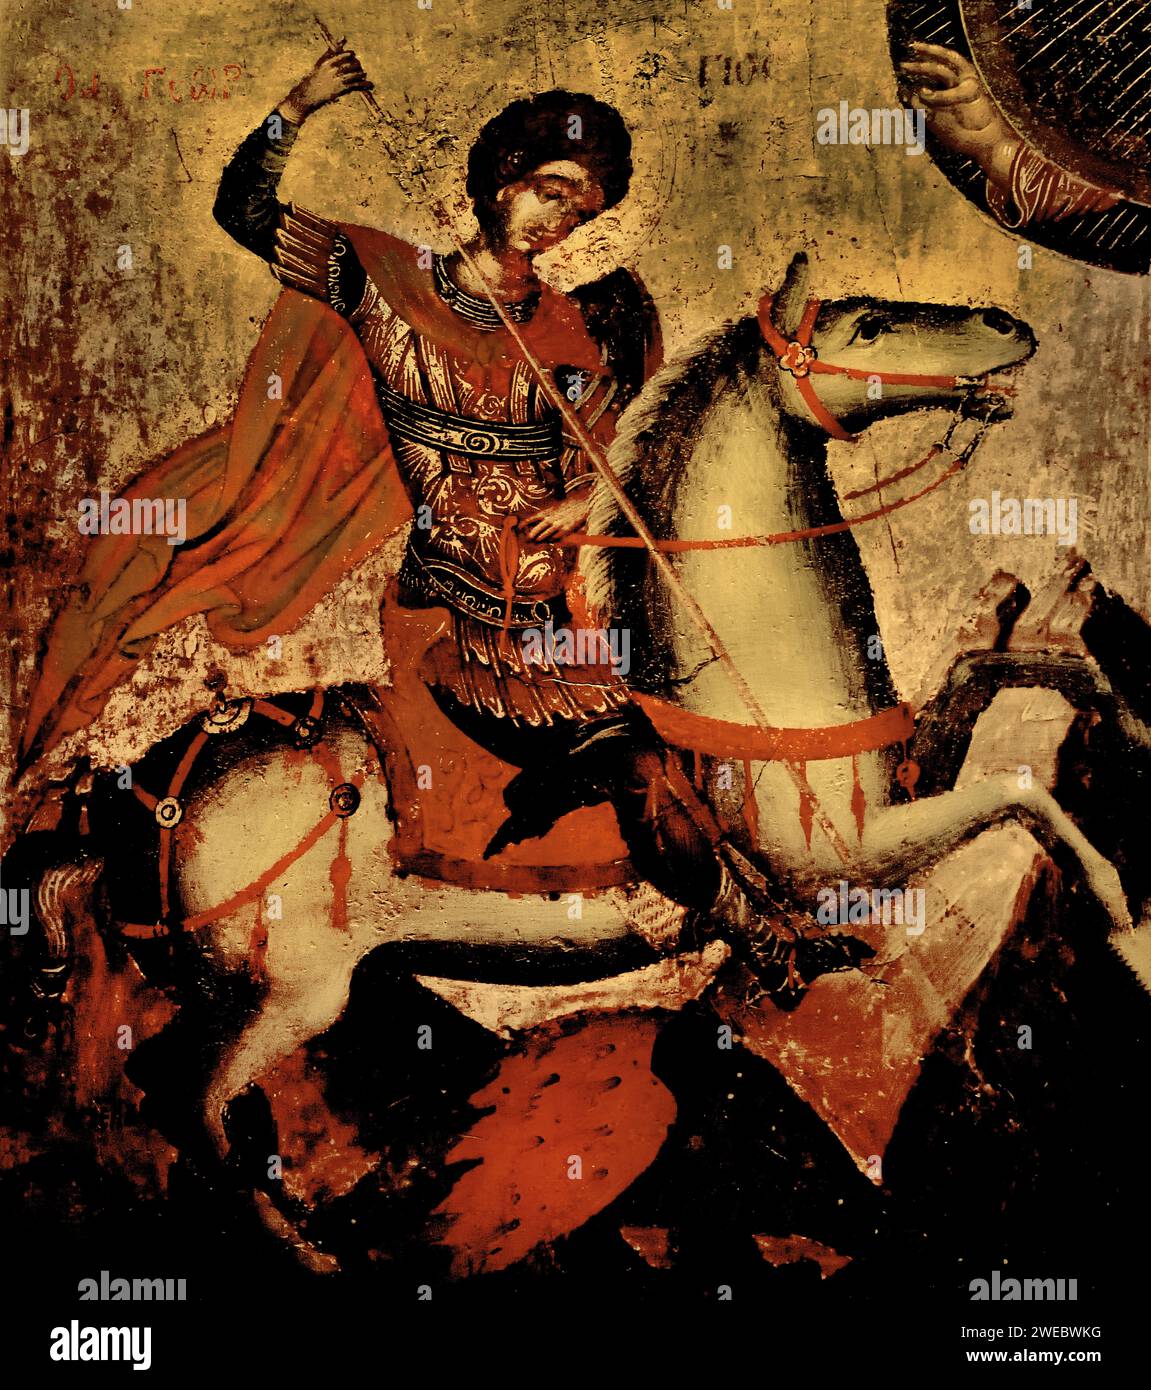 Ikone von St. Georg, dem Drachenjäger auf dem Pferd, Maler Angelos. Benaki-Museum aus dem 15. Jahrhundert Athen Griechenland. Stockfoto